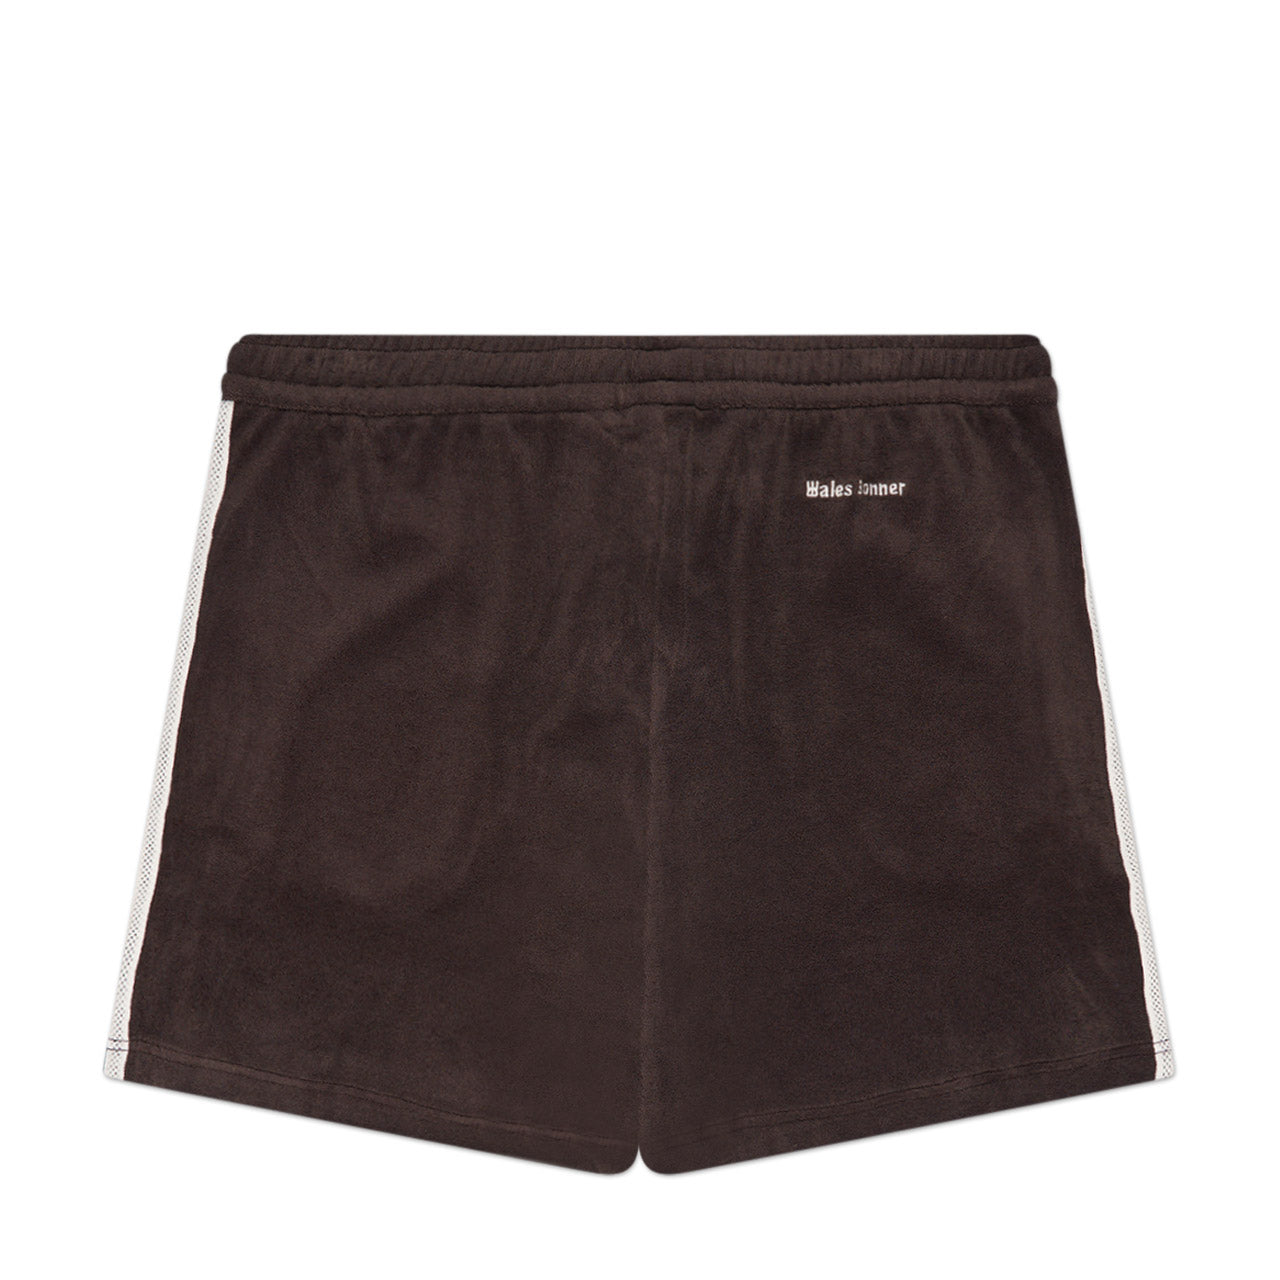 adidas x wales bonner towel shorts (brown)